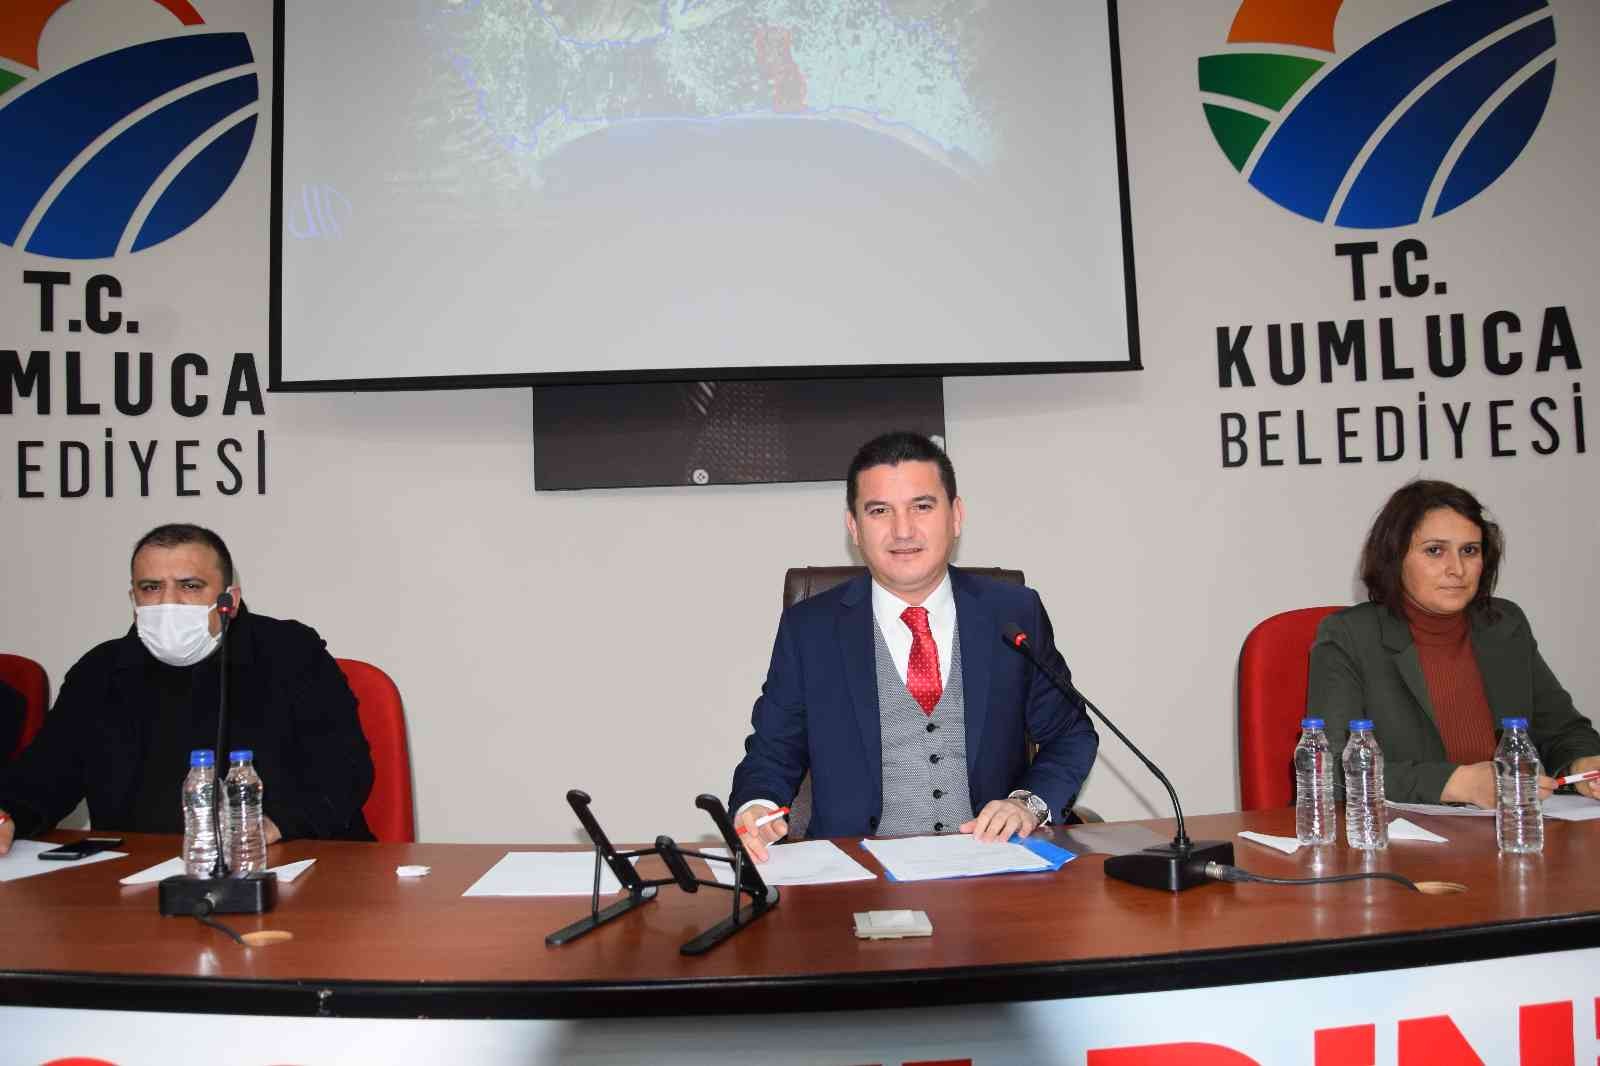 Kumluca Belediyesi Meclis Toplantısı’nda MHP’liler meclisi terk etti